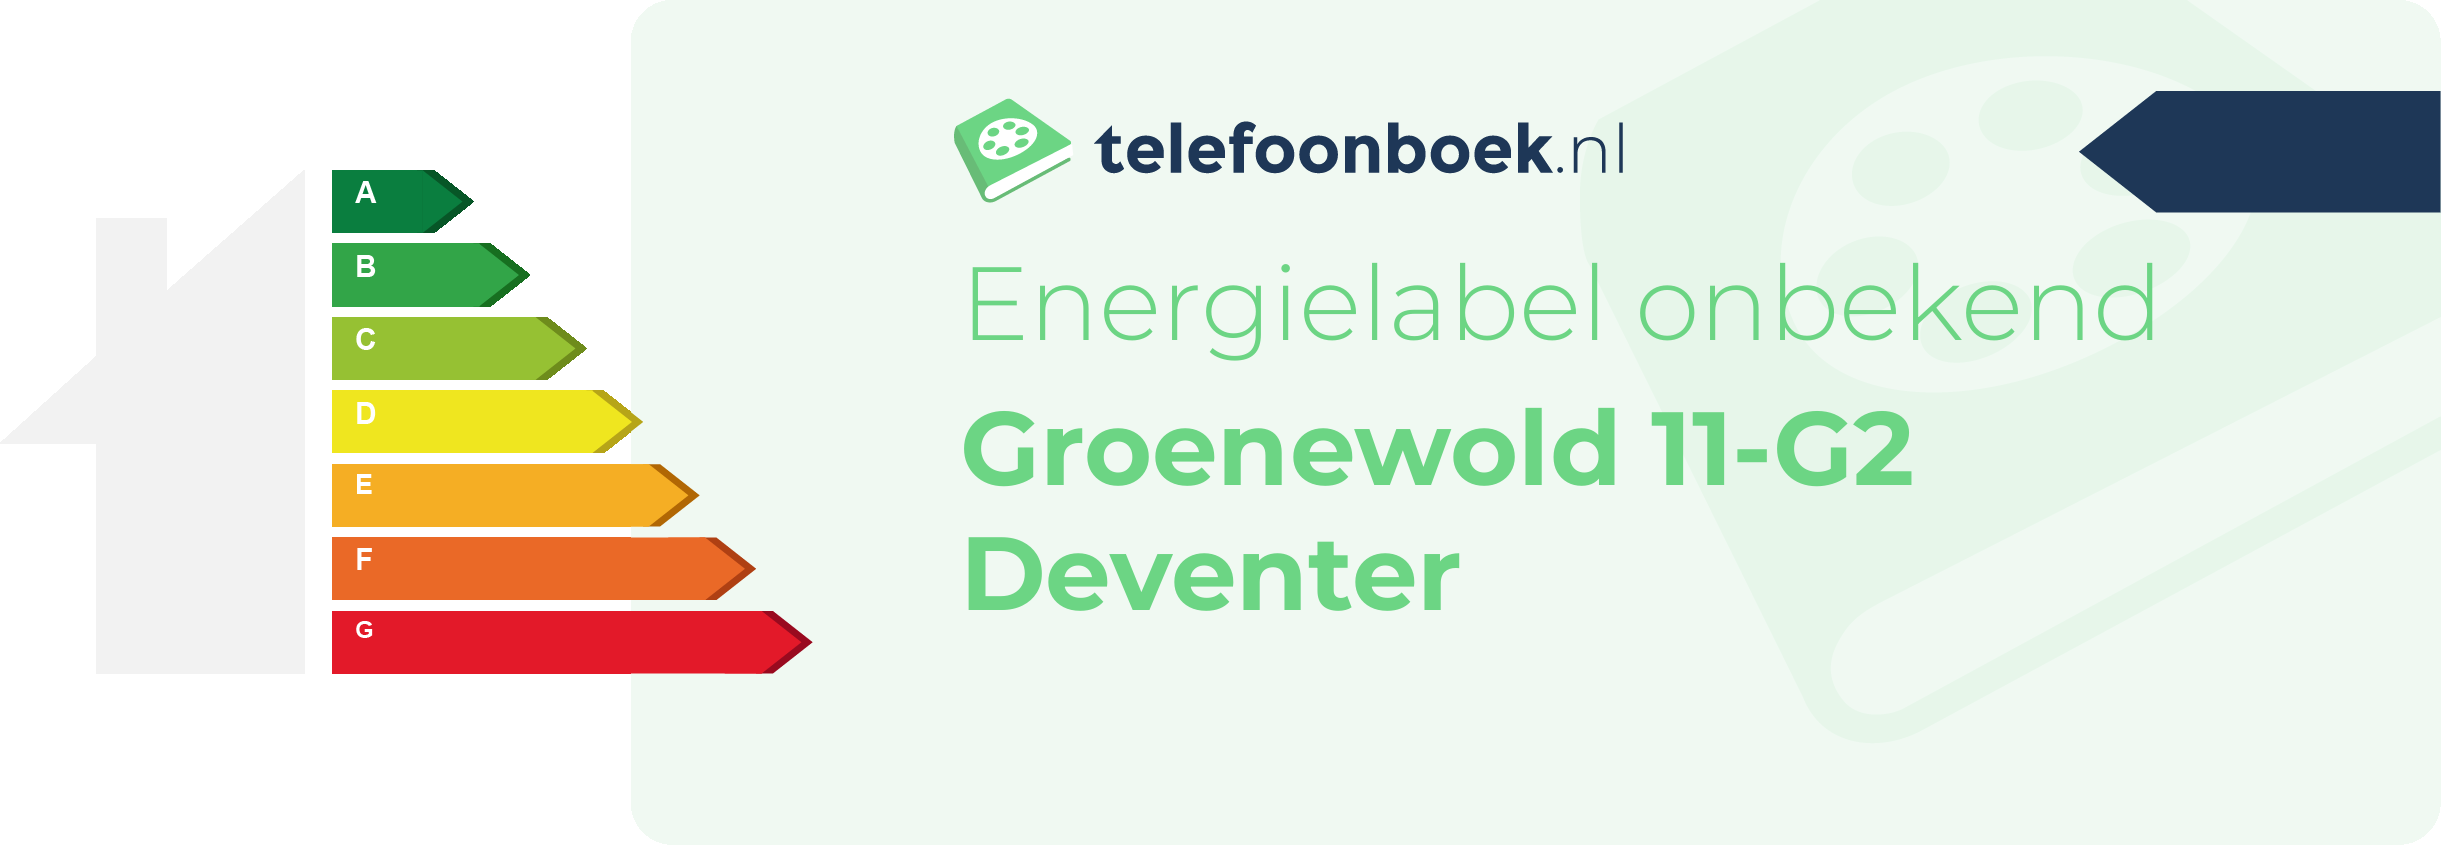 Energielabel Groenewold 11-G2 Deventer